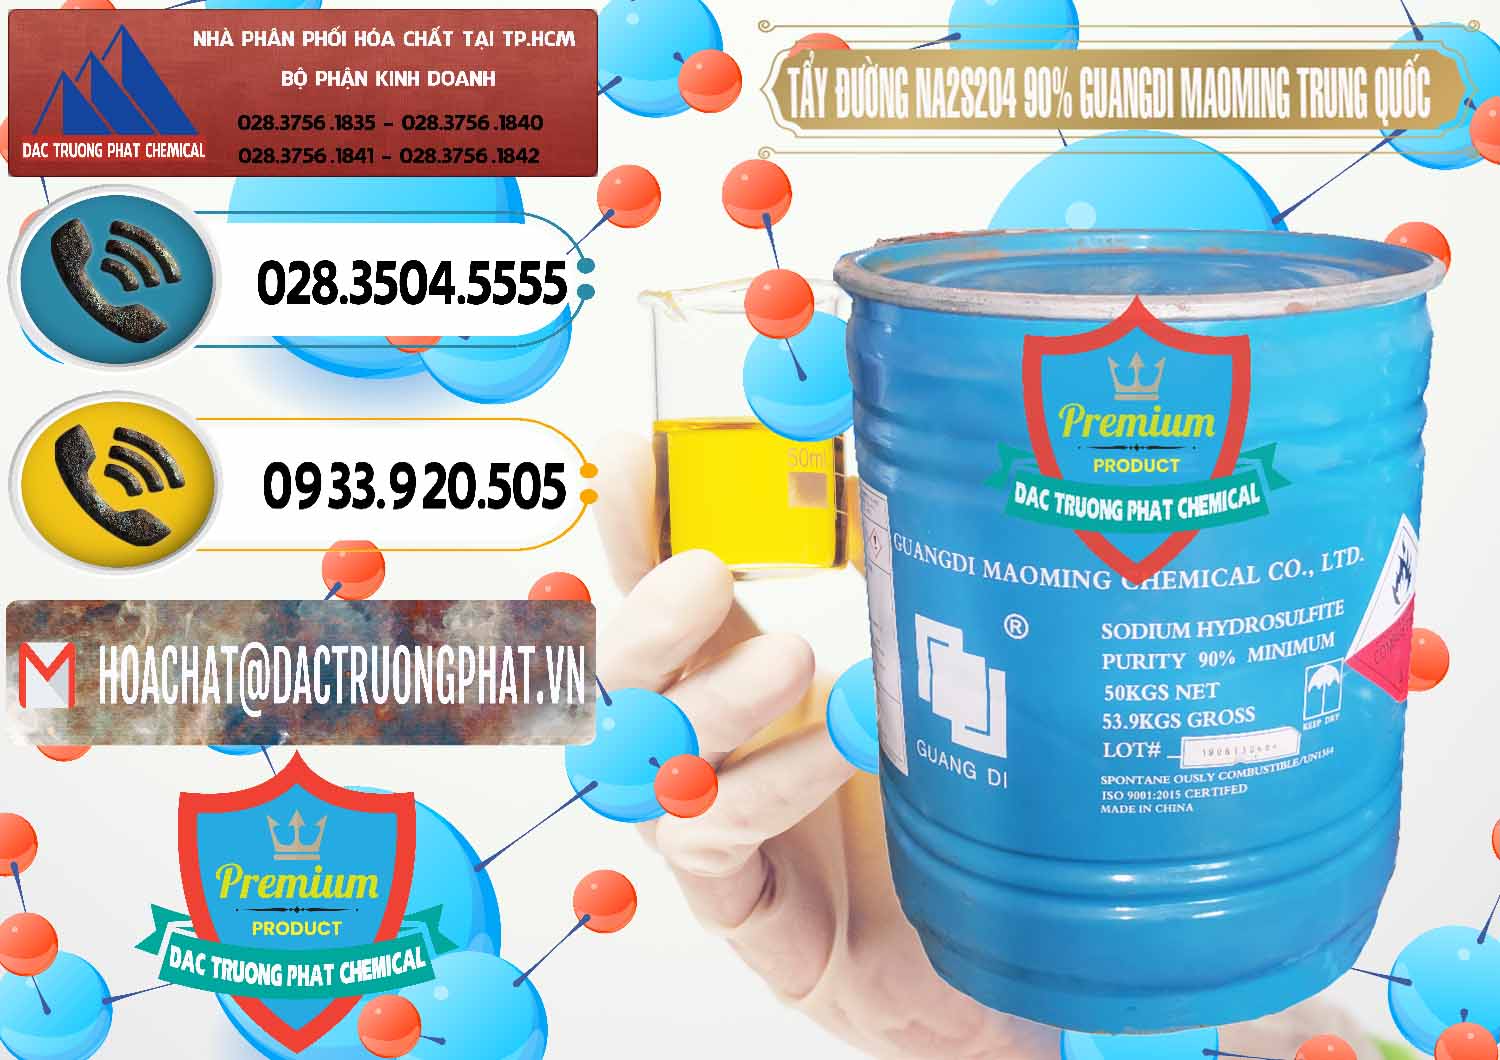 Công ty bán và phân phối Tẩy Đường - NA2S2O4 Guangdi Maoming Trung Quốc China - 0160 - Nơi chuyên cung cấp - nhập khẩu hóa chất tại TP.HCM - hoachatdetnhuom.vn